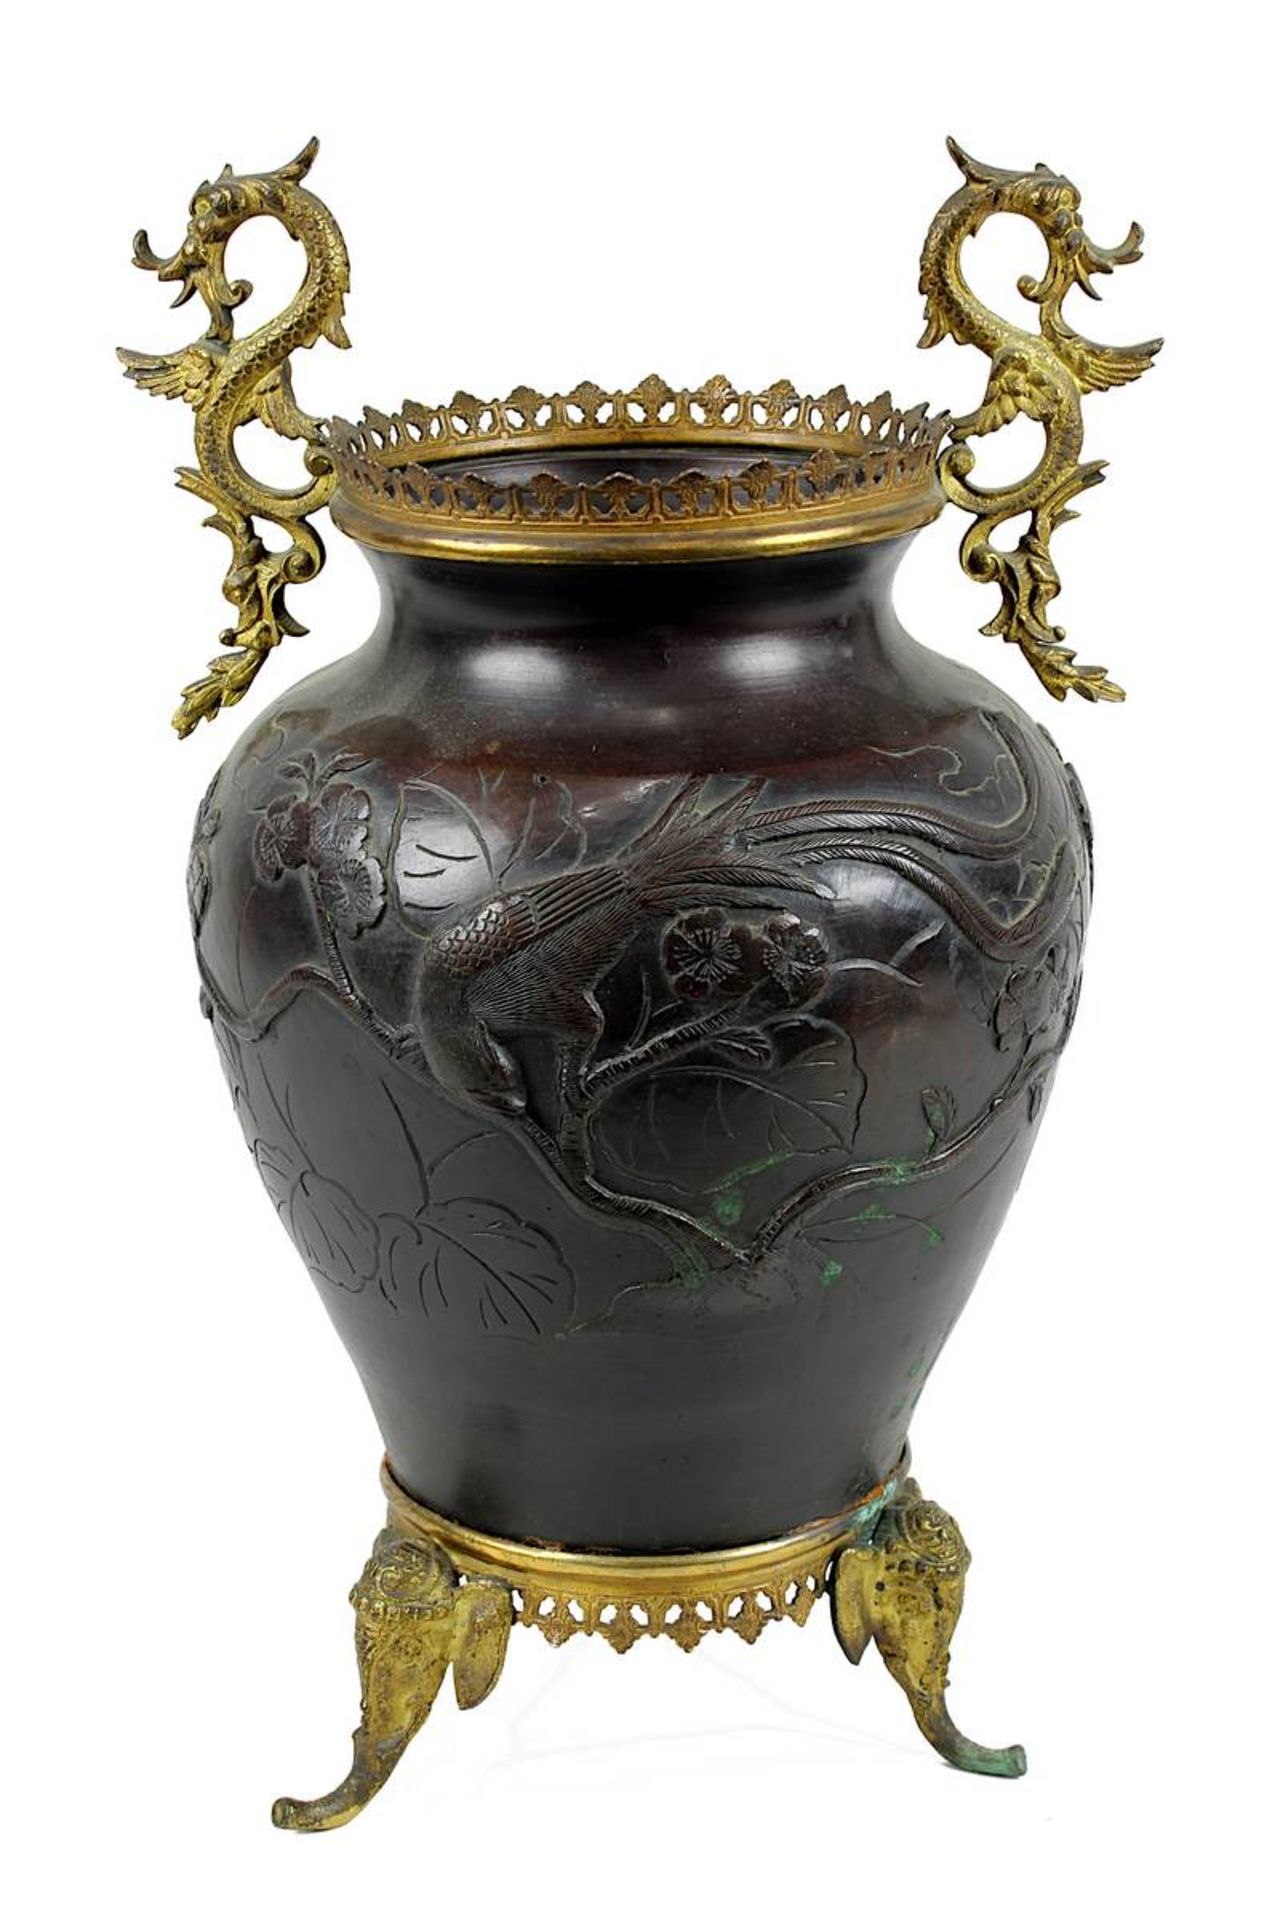 Bronze-Vase mit Phoenix-Motiven, Japan, Meiji-Zeit um 1890, gebauchter Korpus mit 2 im Relief